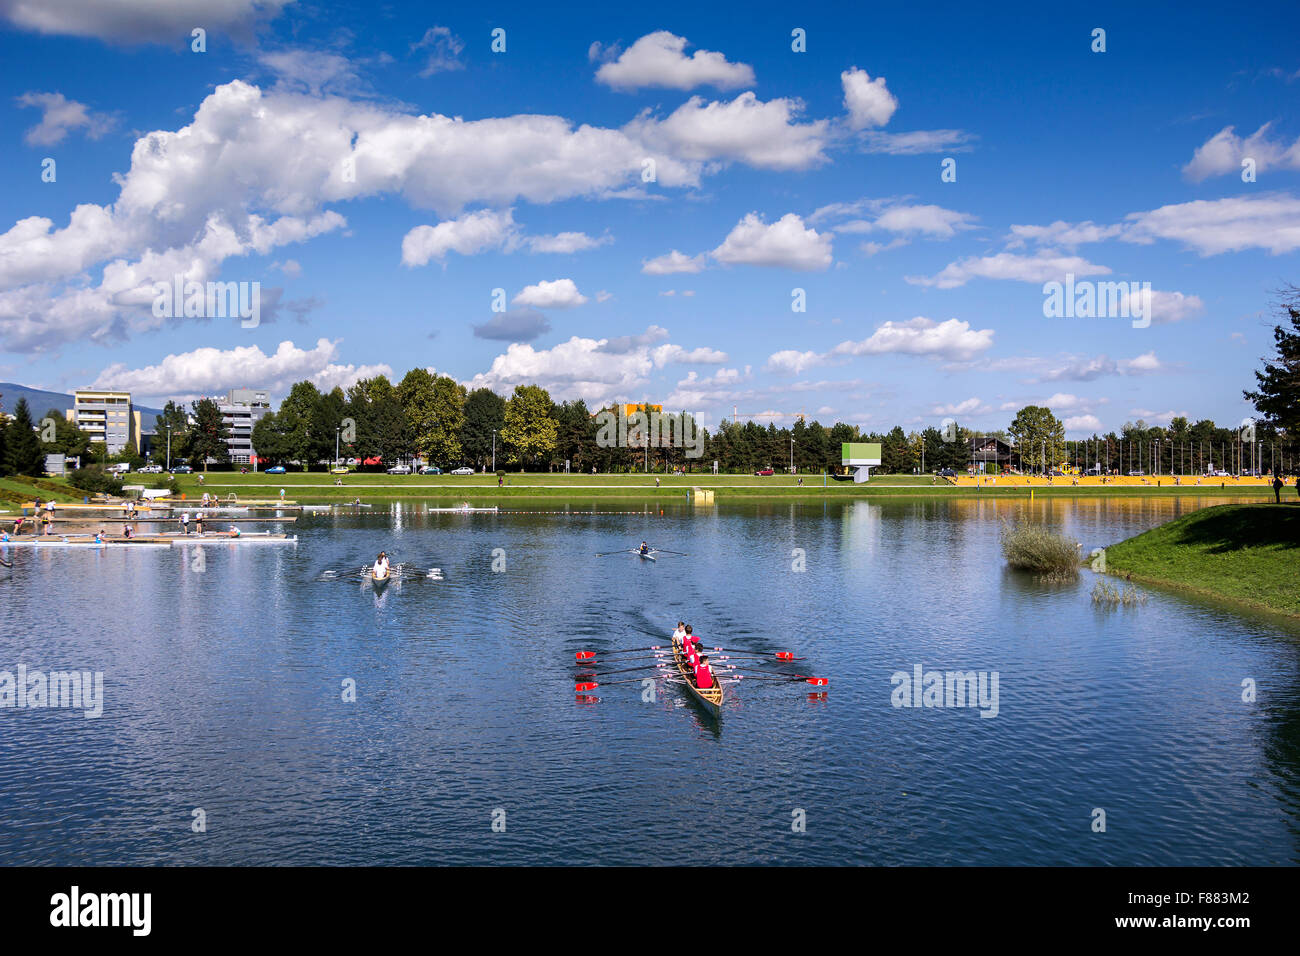 Young pepole training rowing on the lake Jarun in Zagreb, Croatia Stock Photo